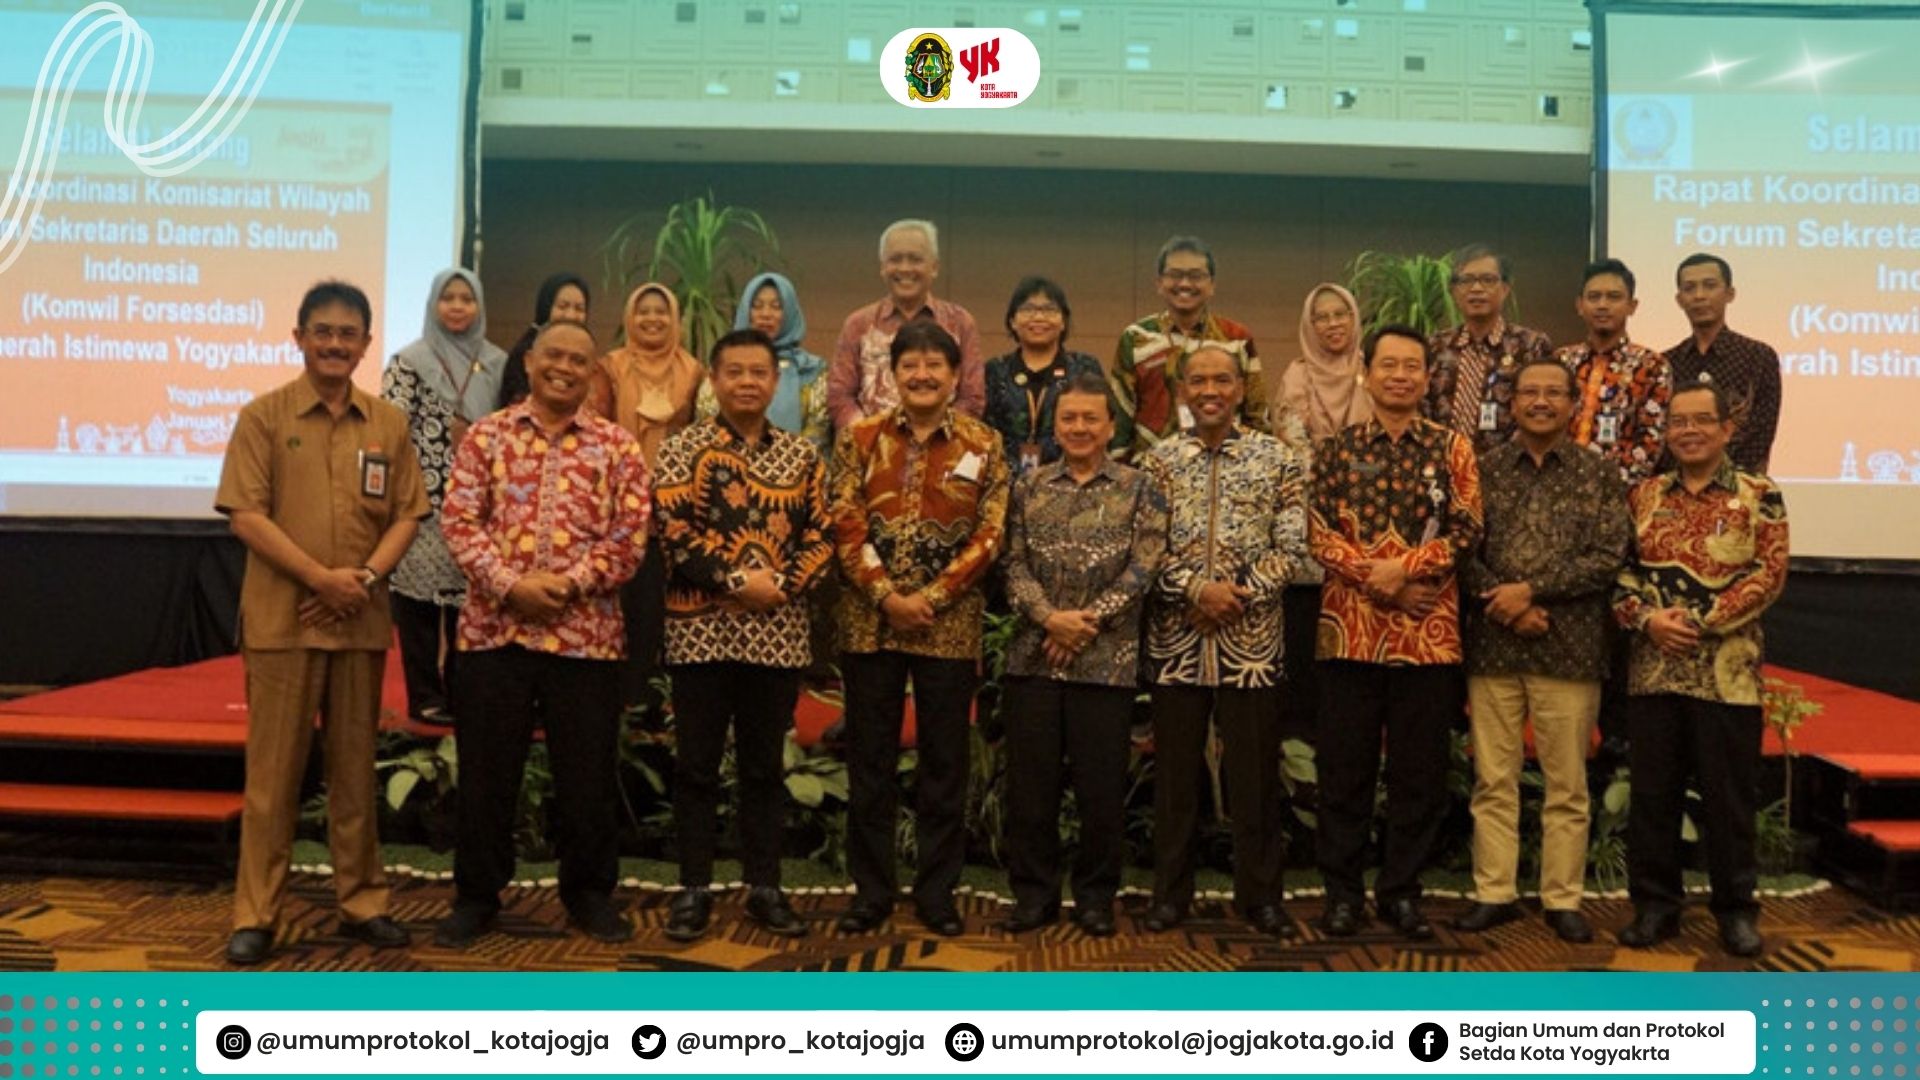 Rapat Koordinasi Komisariat Wilayah Forum Sekretaris Daerah Seluruh Indonesia (Komwil Forsesdasi) DIY